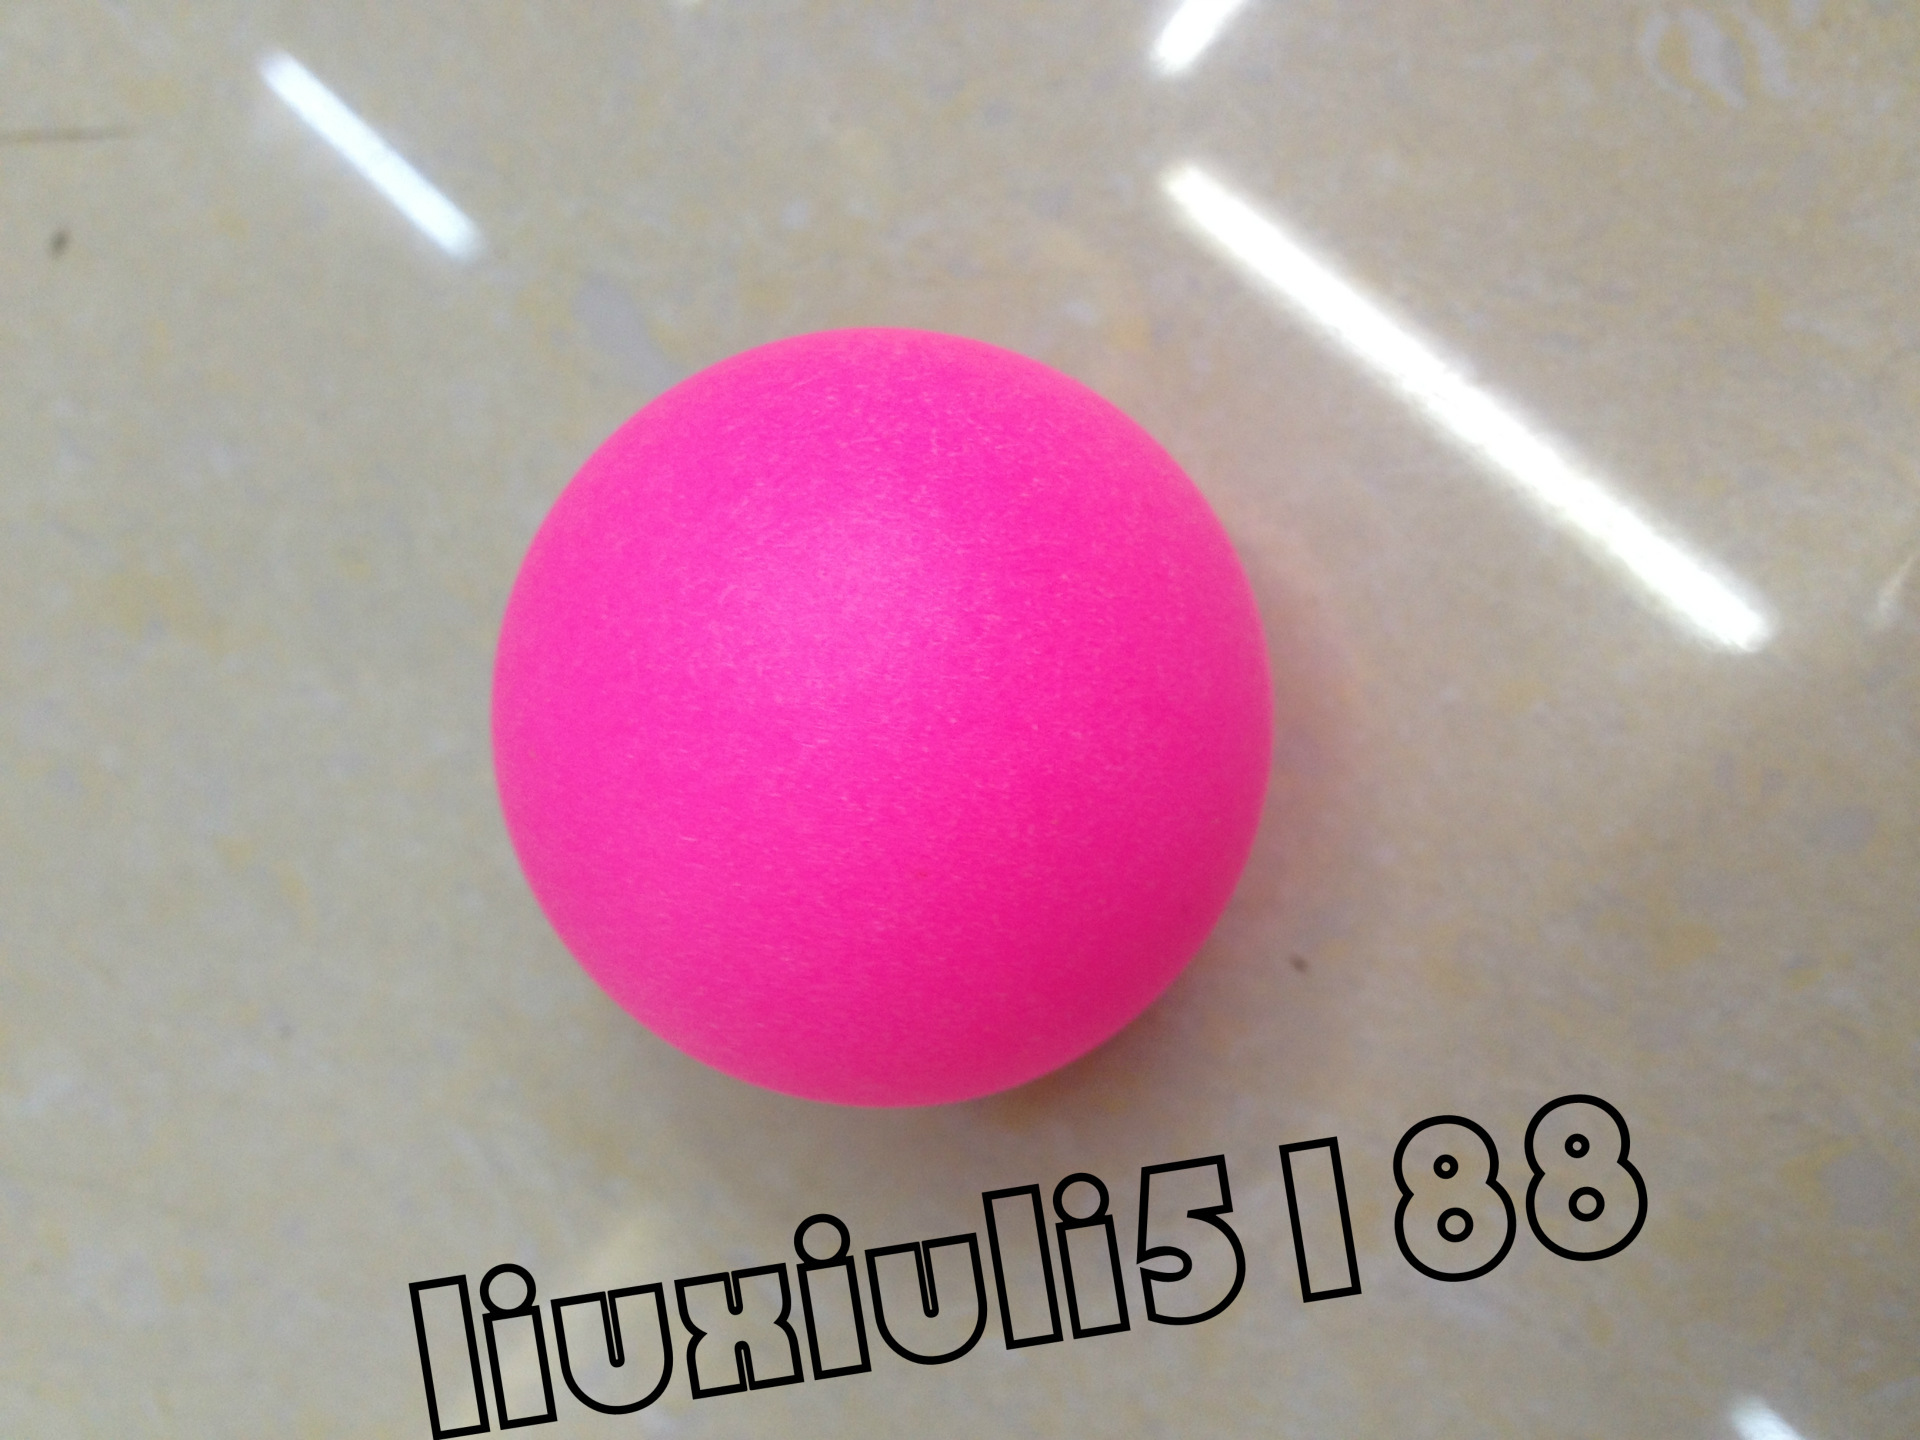 厂家直销新款彩色乒乓球无痕彩色初学者训练用球耐打pp材质乒乓球